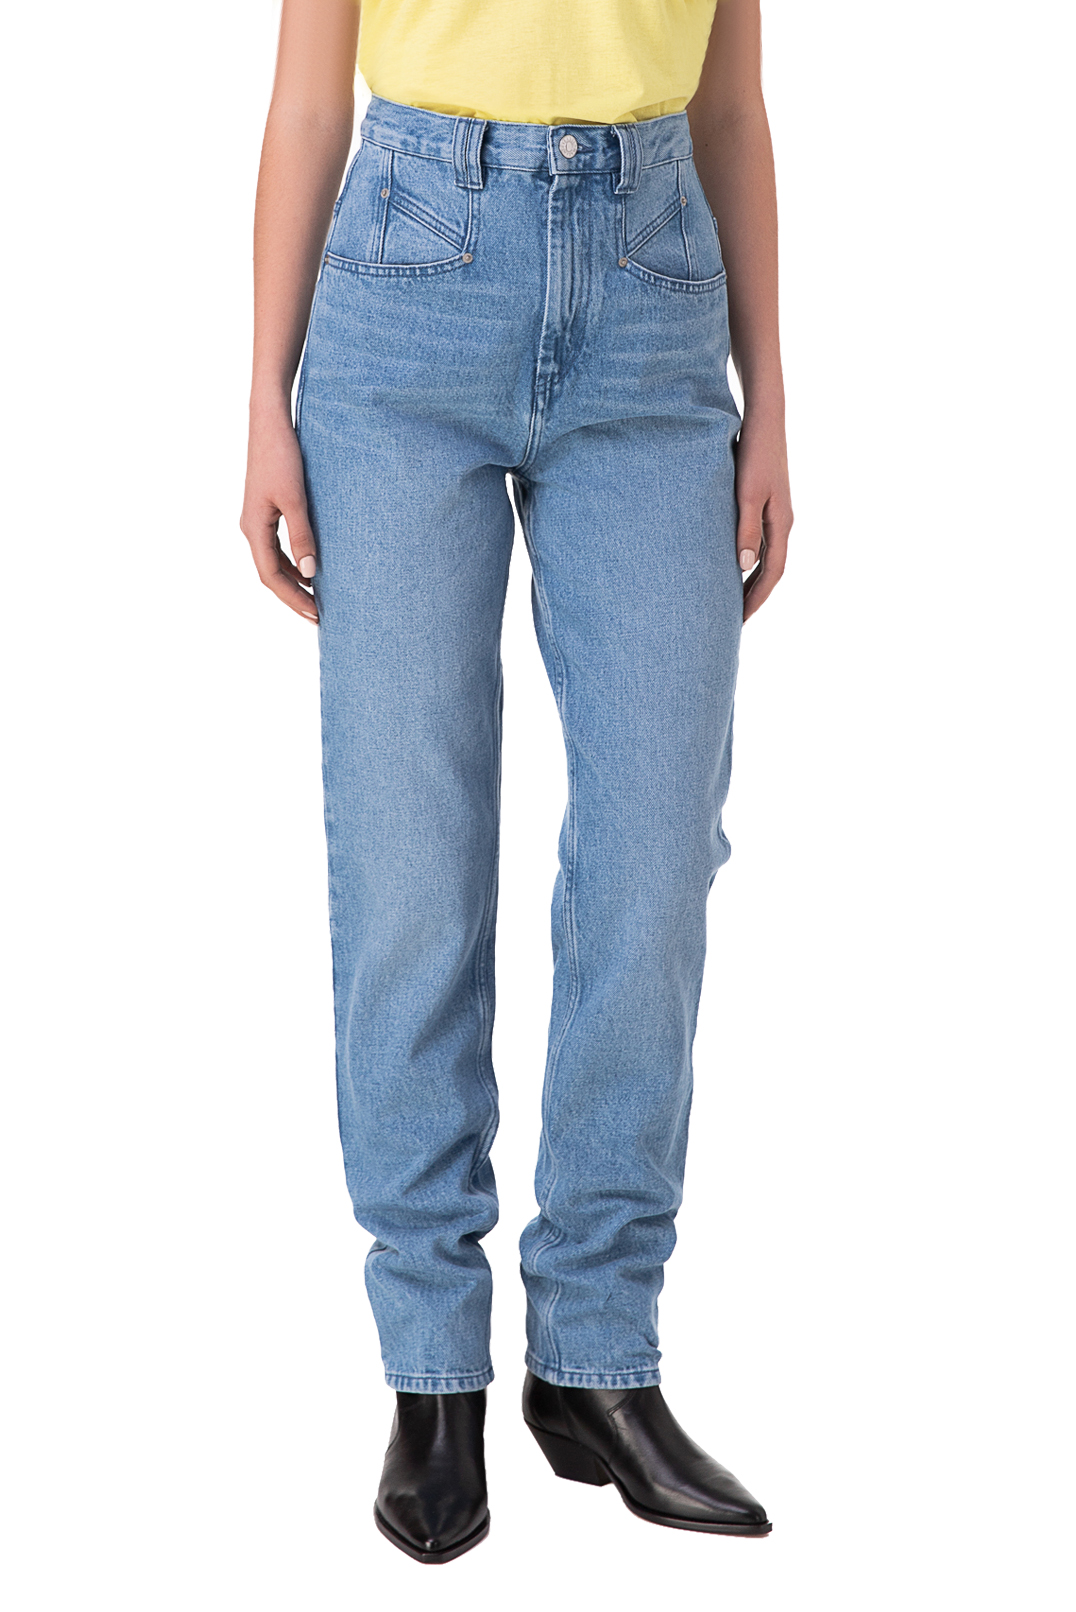 Подовжені джинси з ефектом потертості ISABEL MARANT ISBp10007